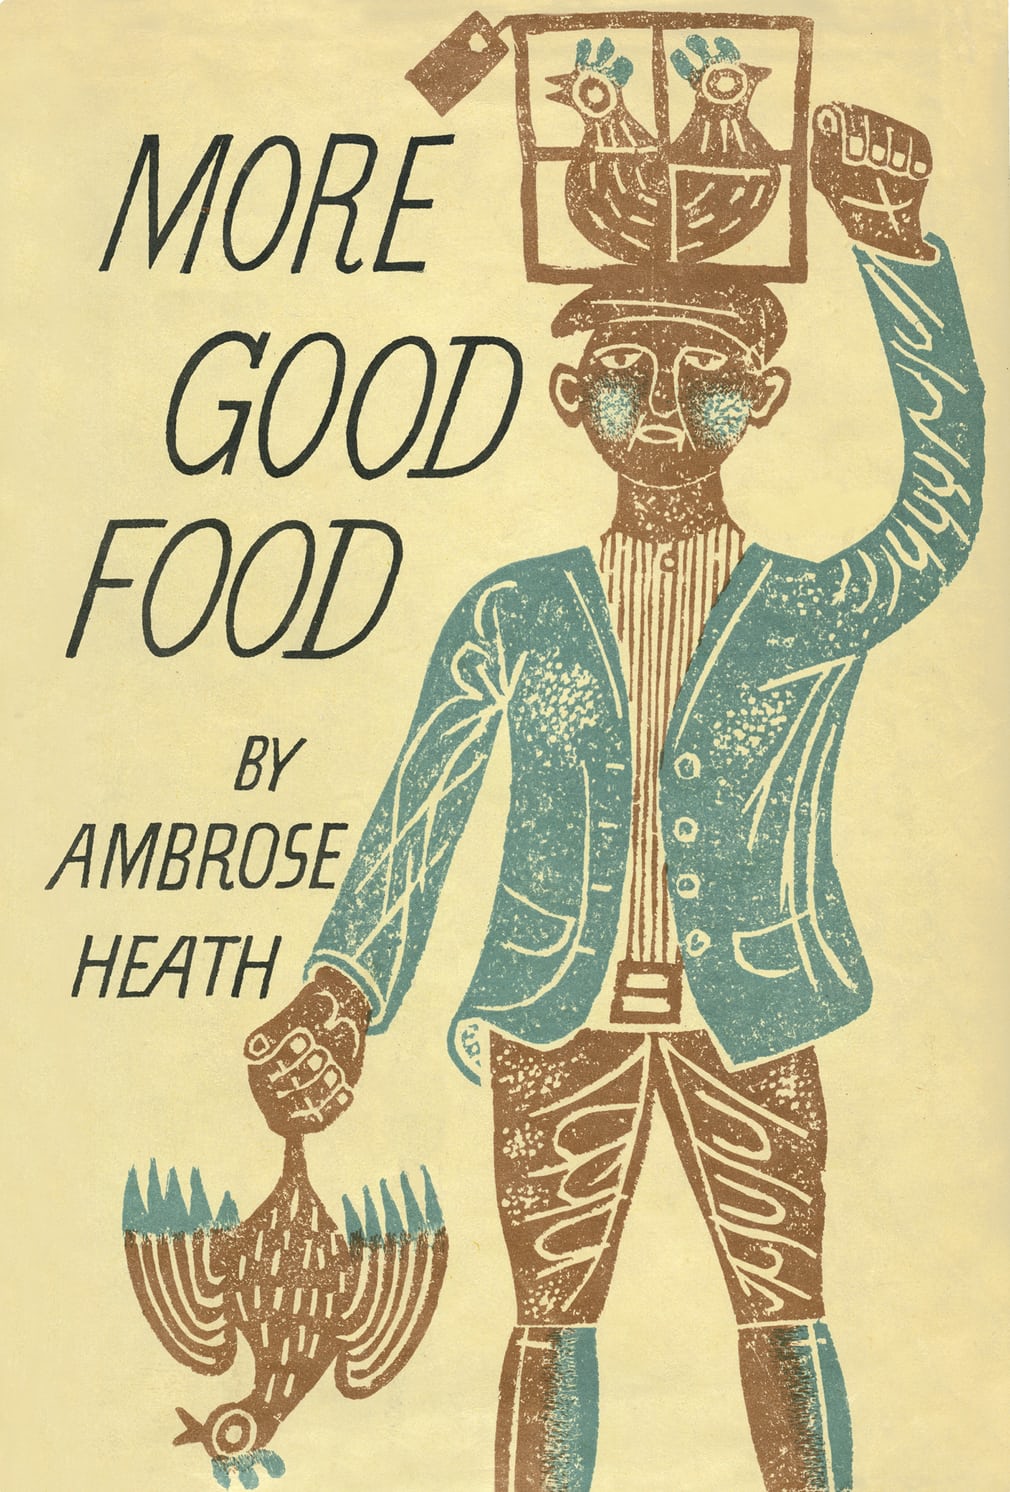 Ambrose Heath’s Good Food EDWARD BAWDEN